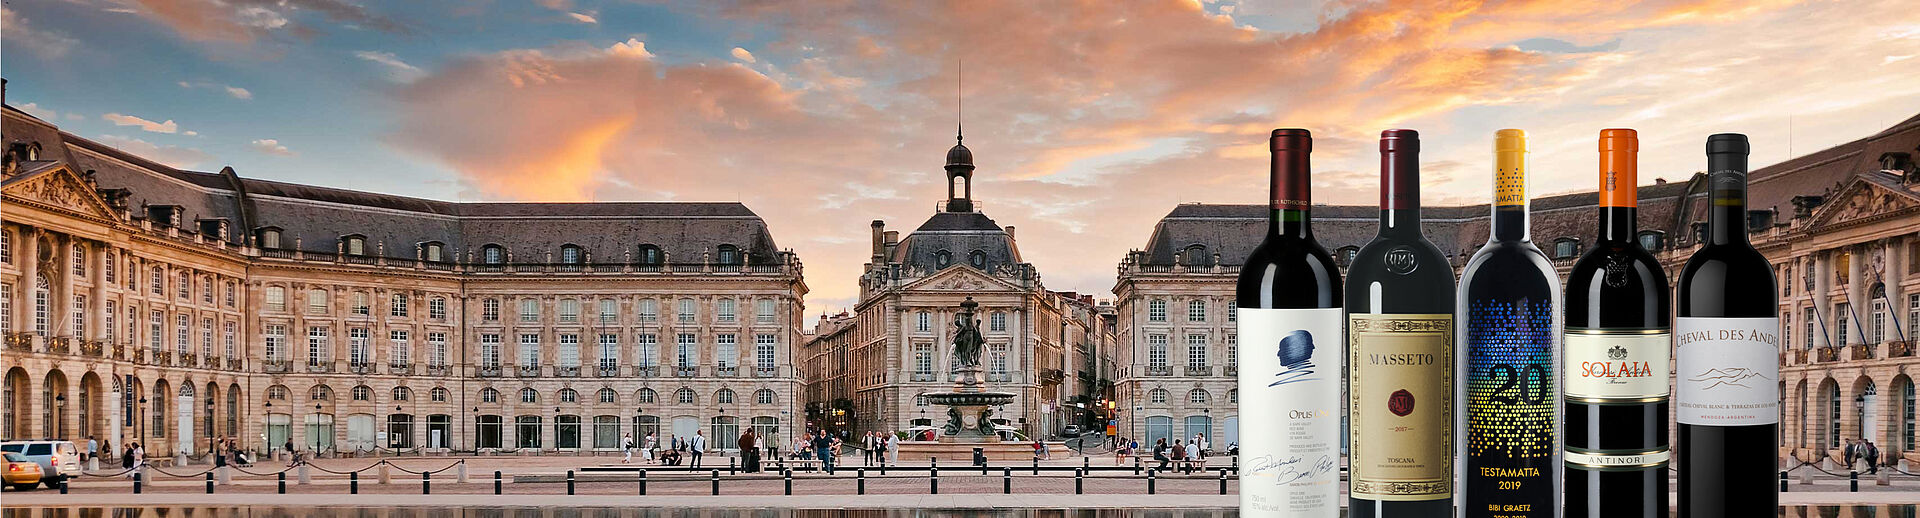 Place Bordeaux